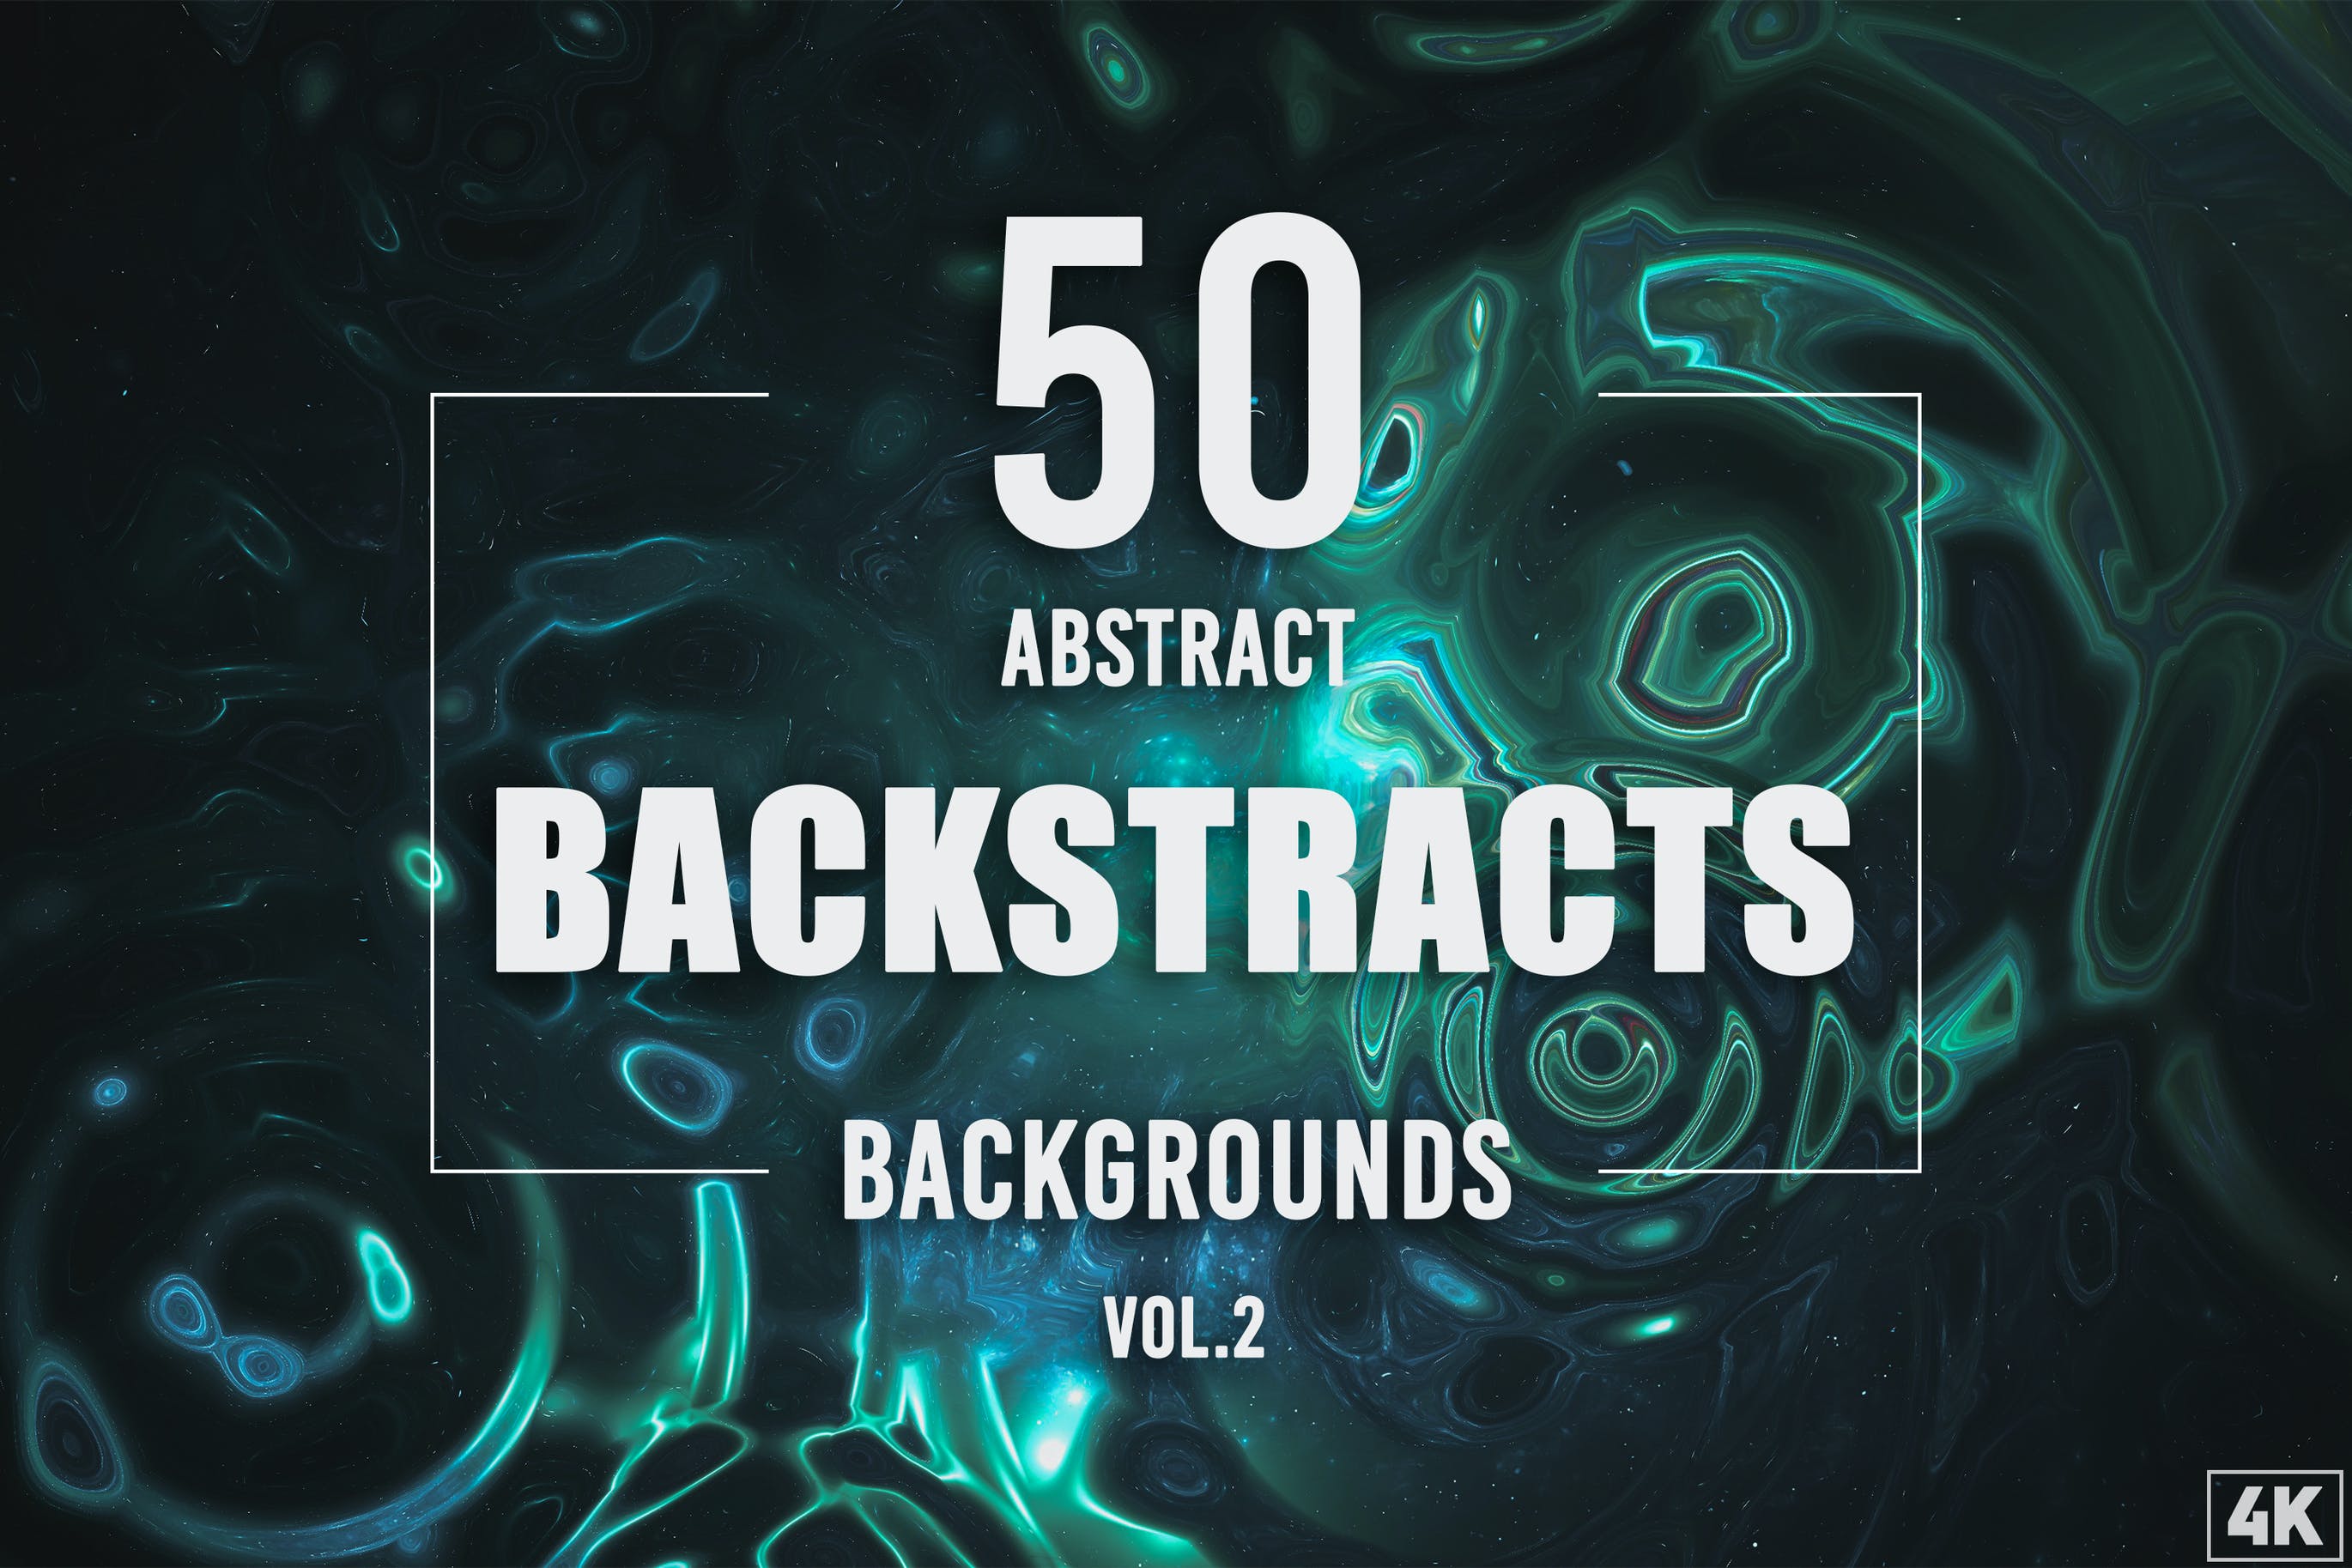 50个流体抽象背景素材v2 50 Abstract Backstracts – Vol. 2 图片素材 第1张